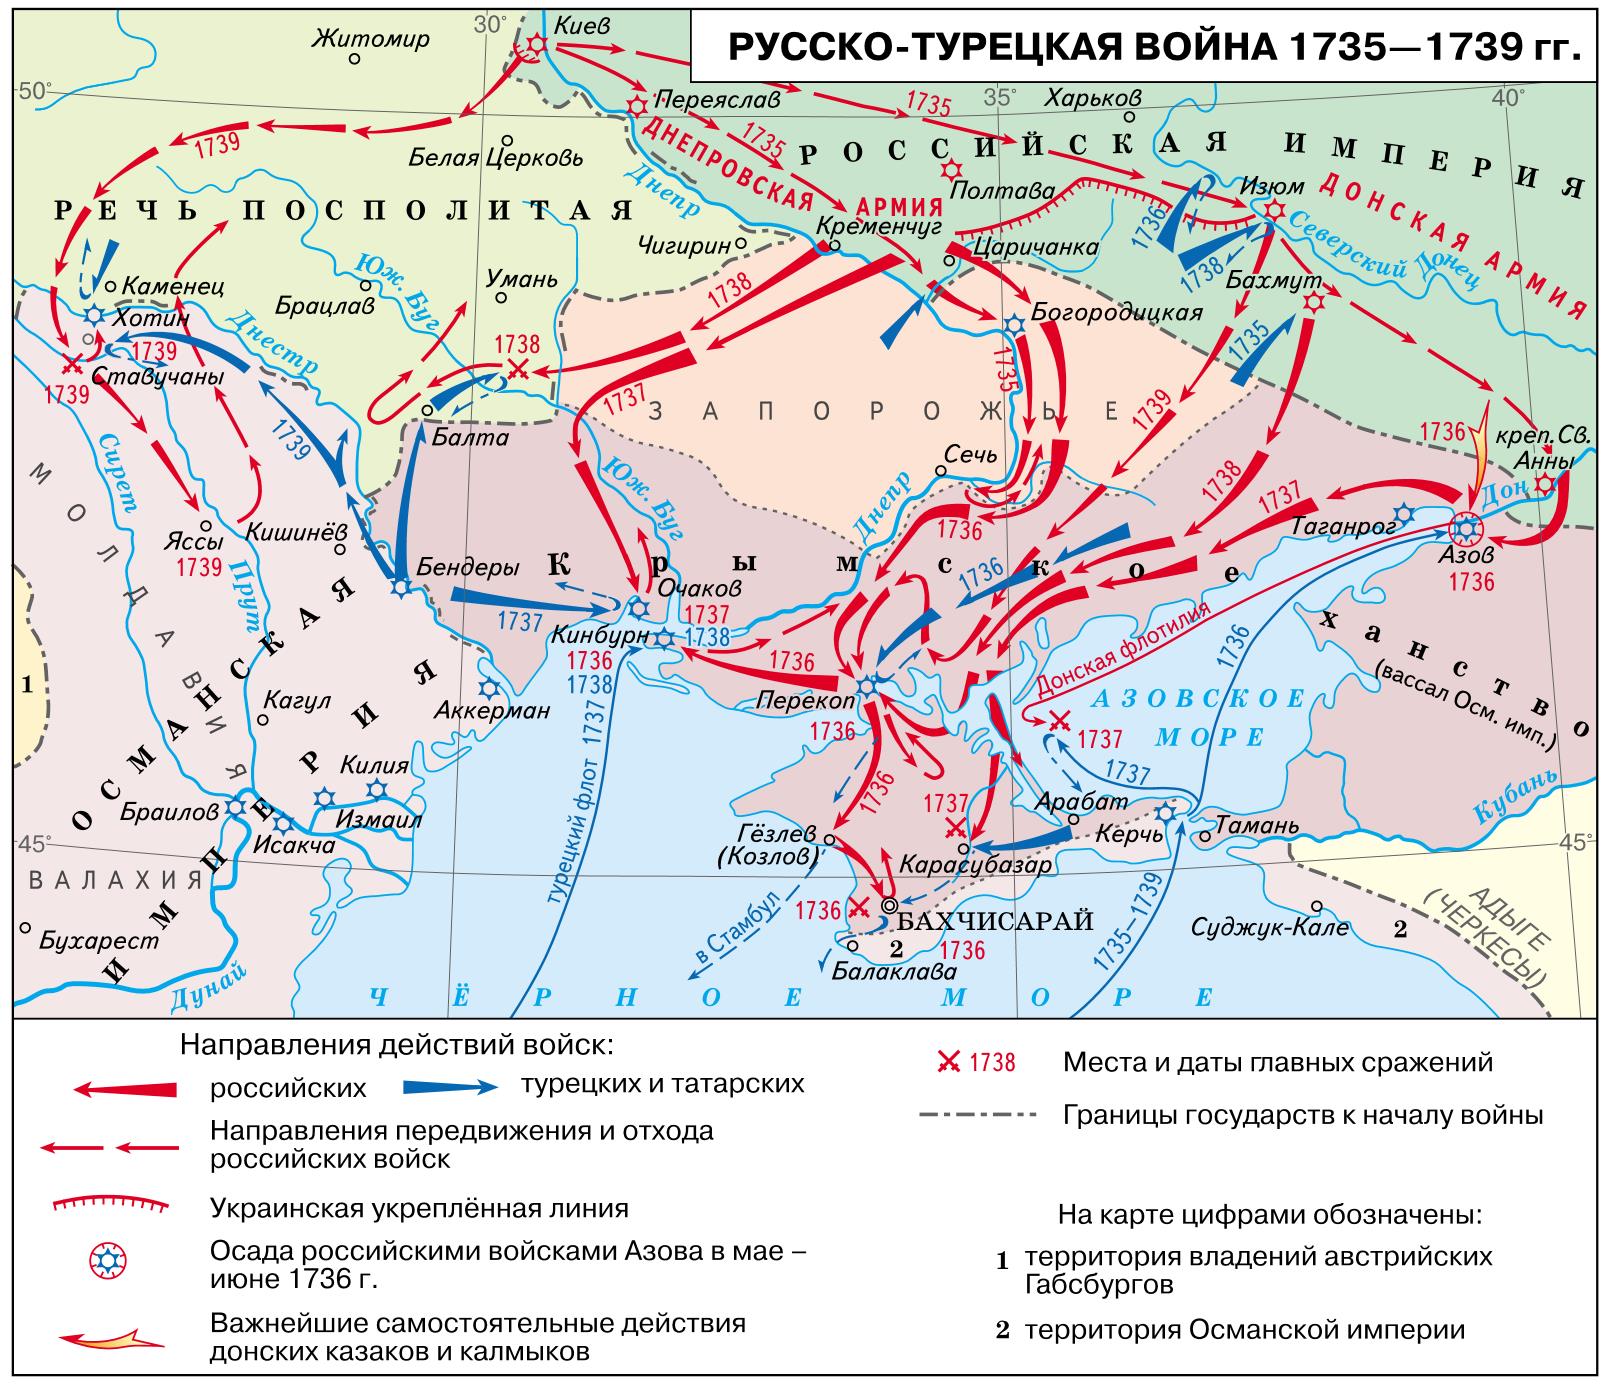 Русский полководец времен анны иоанновны. Карта русско турецкой войны 1735 1739 года.